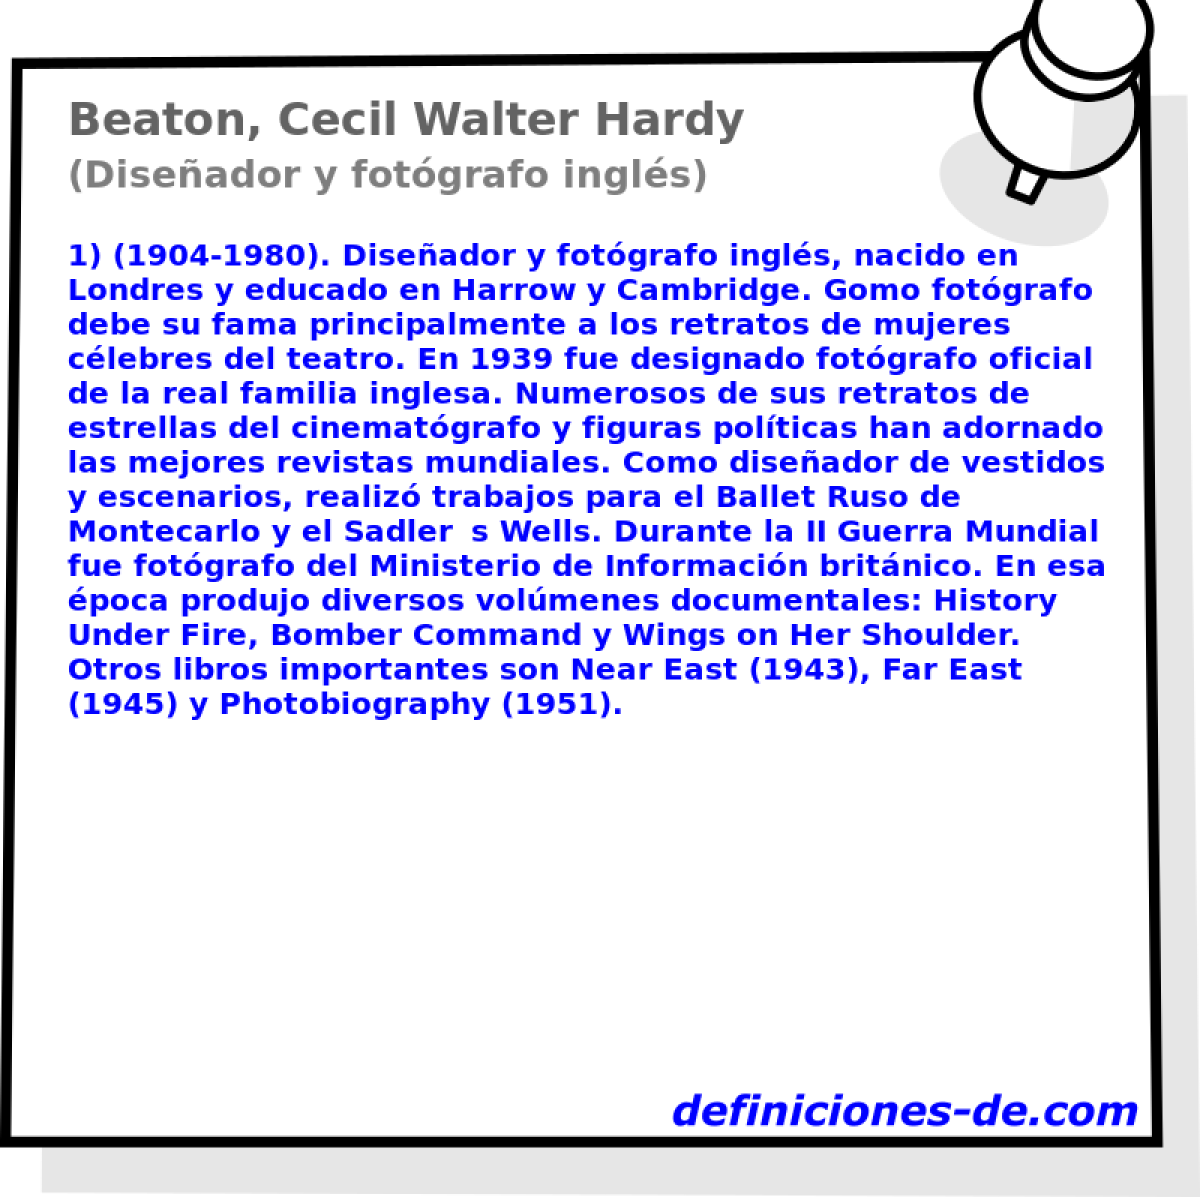 Beaton, Cecil Walter Hardy (Diseador y fotgrafo ingls)